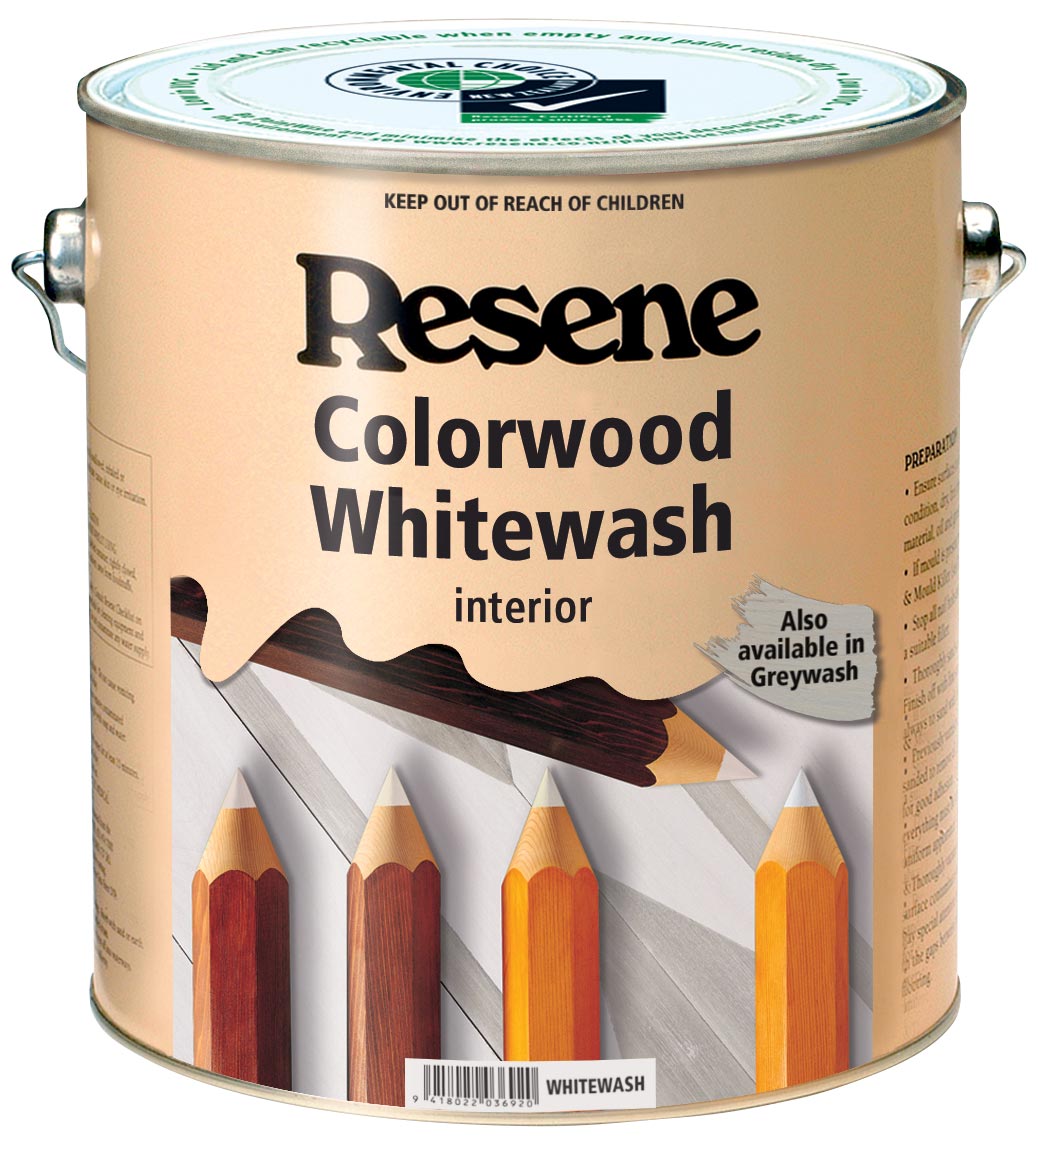 Resene Colorwood Whitewash